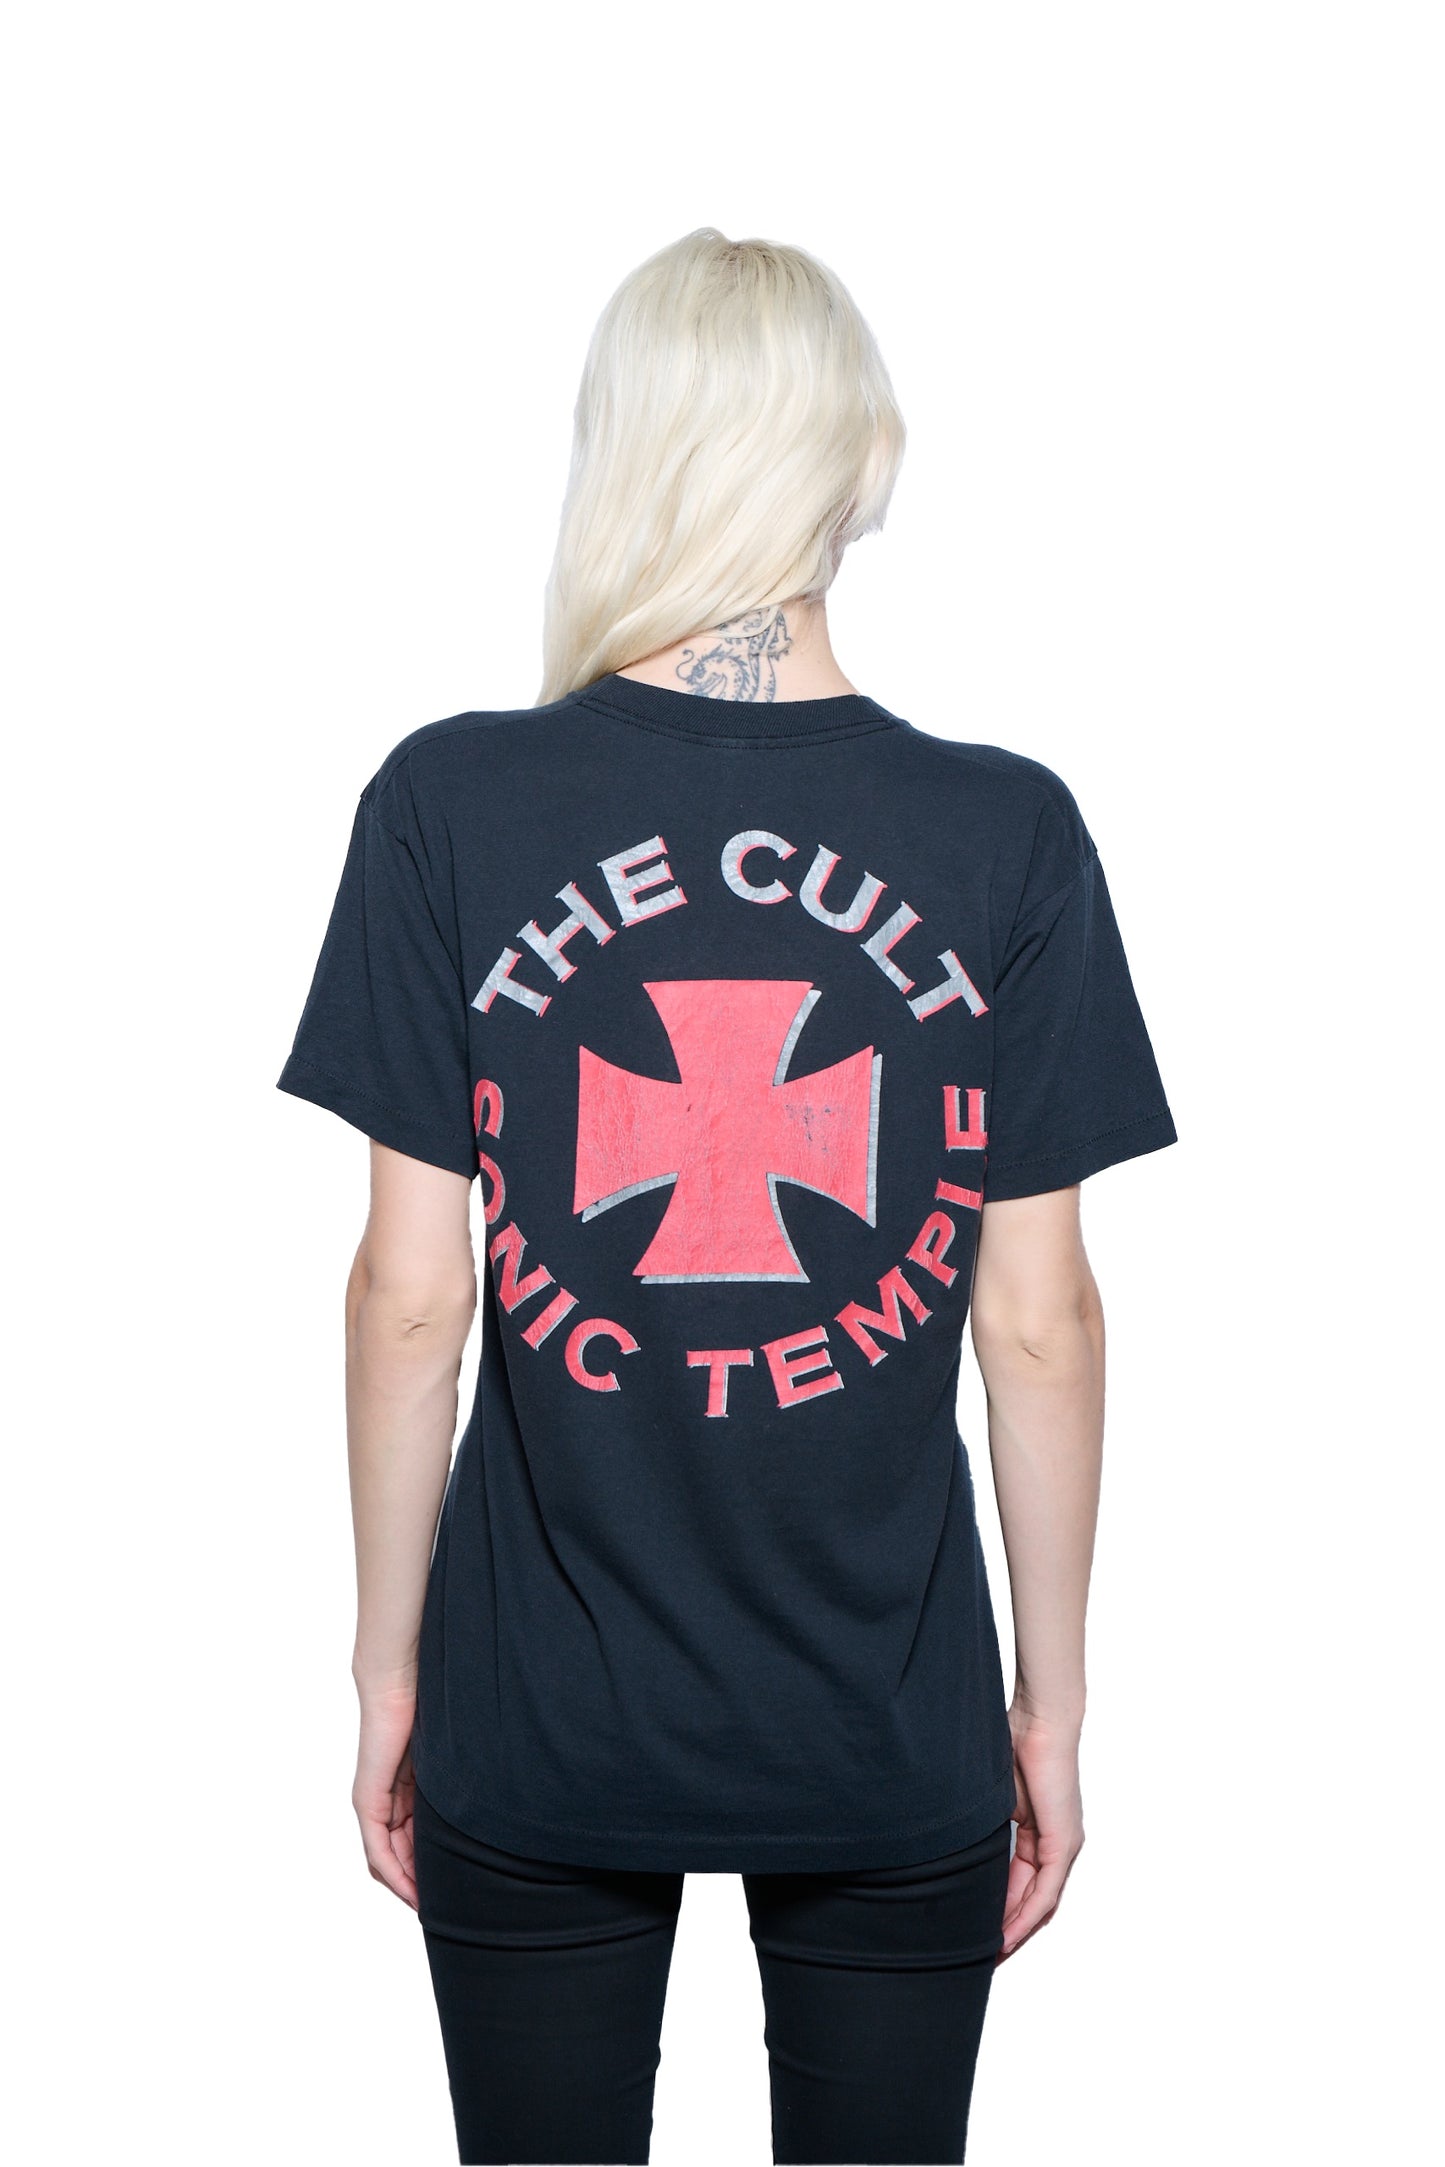 Vintage 1989 The Cult Sonic Temple Tour T-Shirt